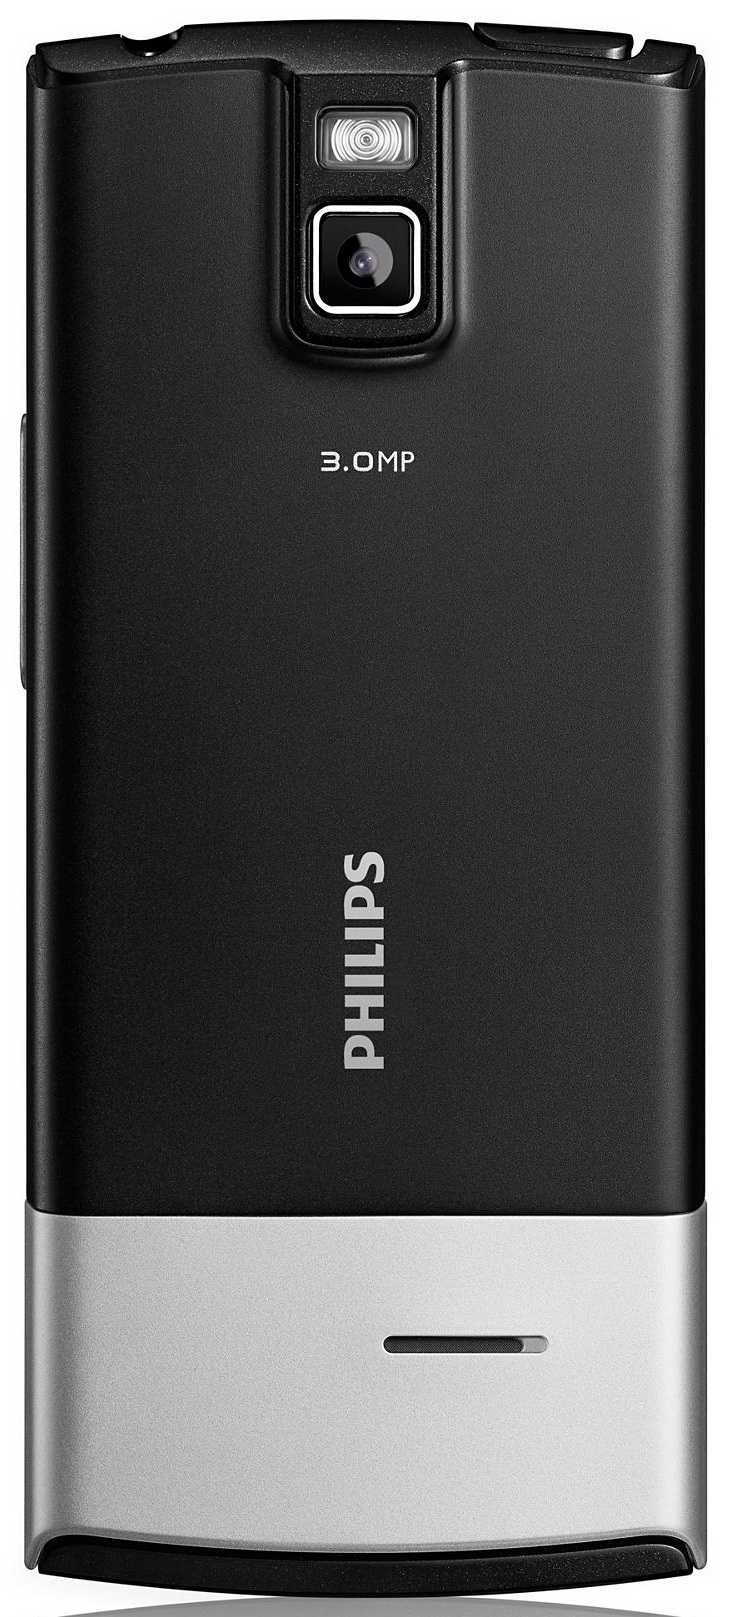 Описание филипс. Philips x332. Телефон Филипс x332. Philips 332. Телефон Philips 332.